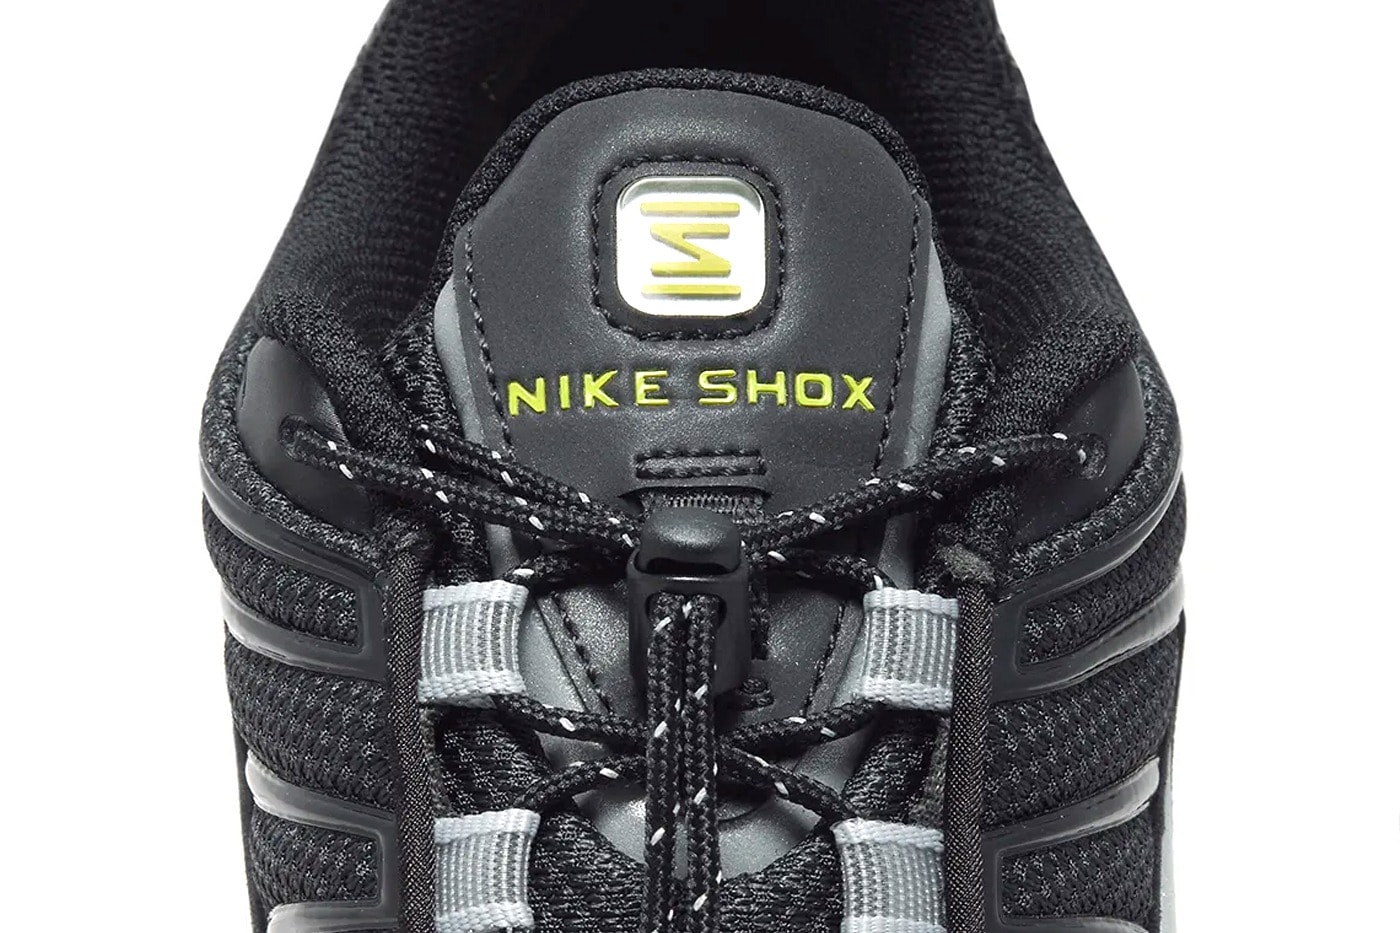 Nike Shox TL 全新配色「Black/Grey」率先曝光